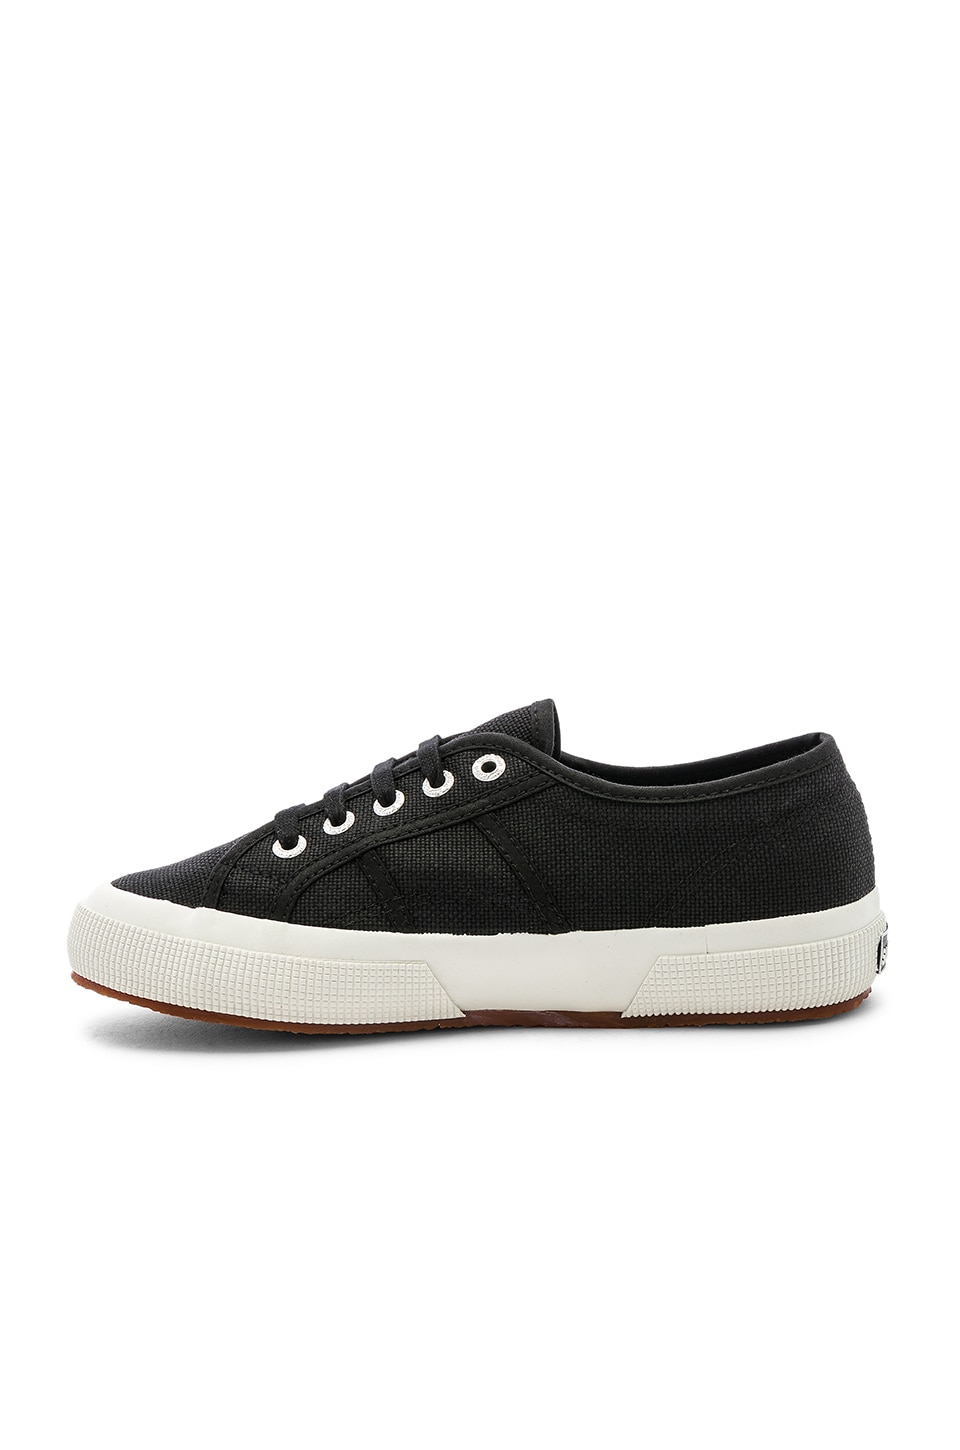 Superga 2750 COTW Sneaker in Black & White | REVOLVE